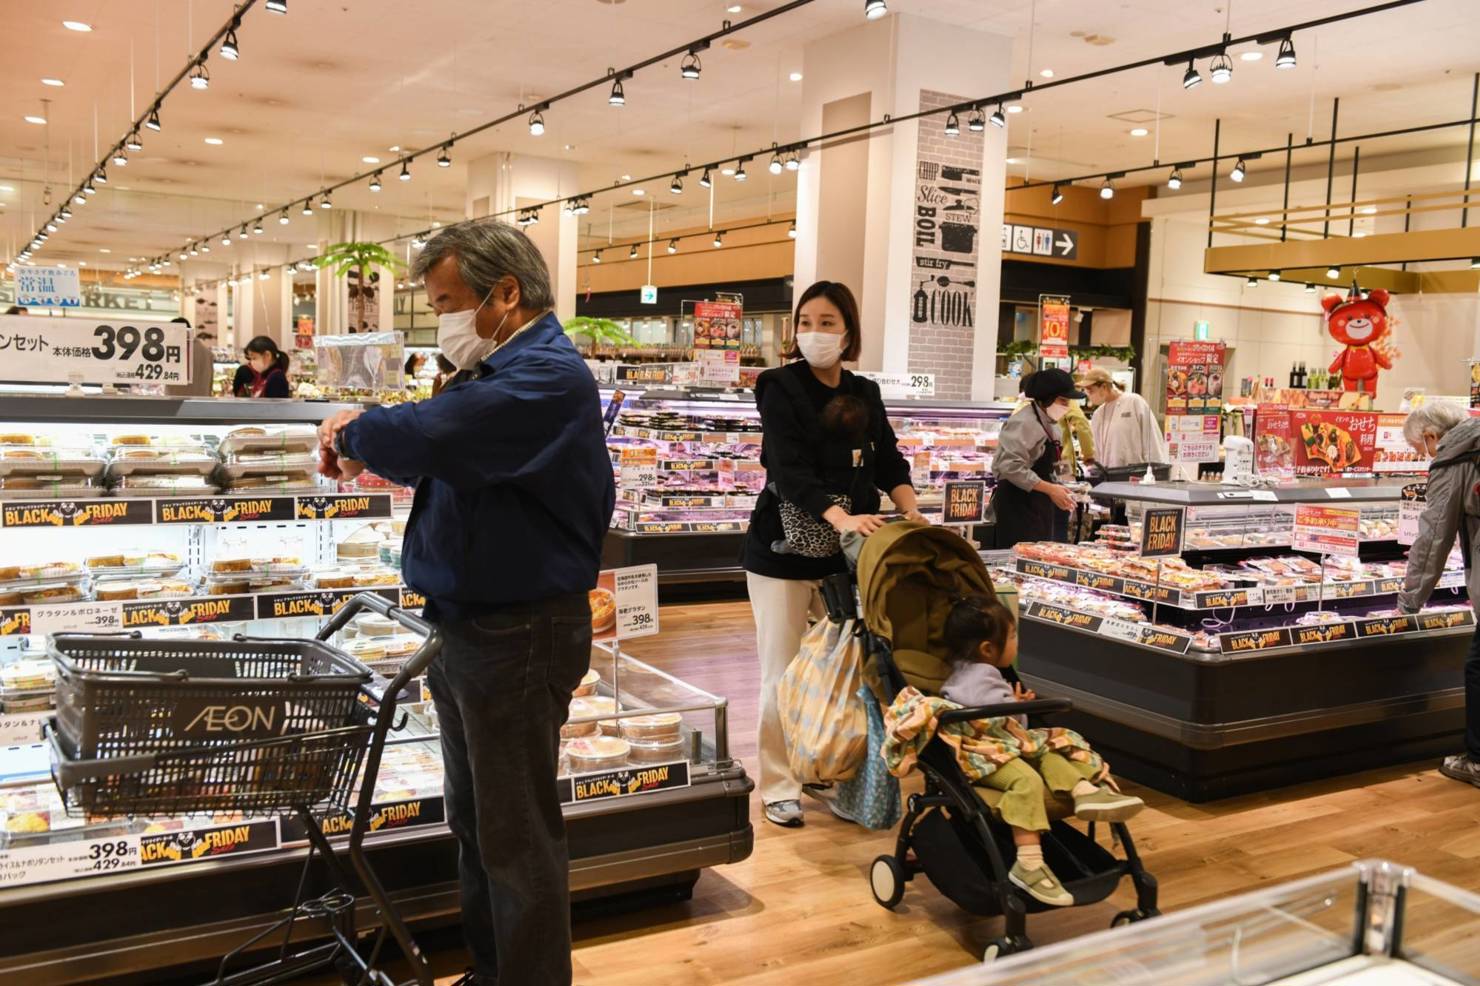  Người dân đi mua sắm tại một siêu thị  ở Nhật Bản. Ảnh: Bloomberg